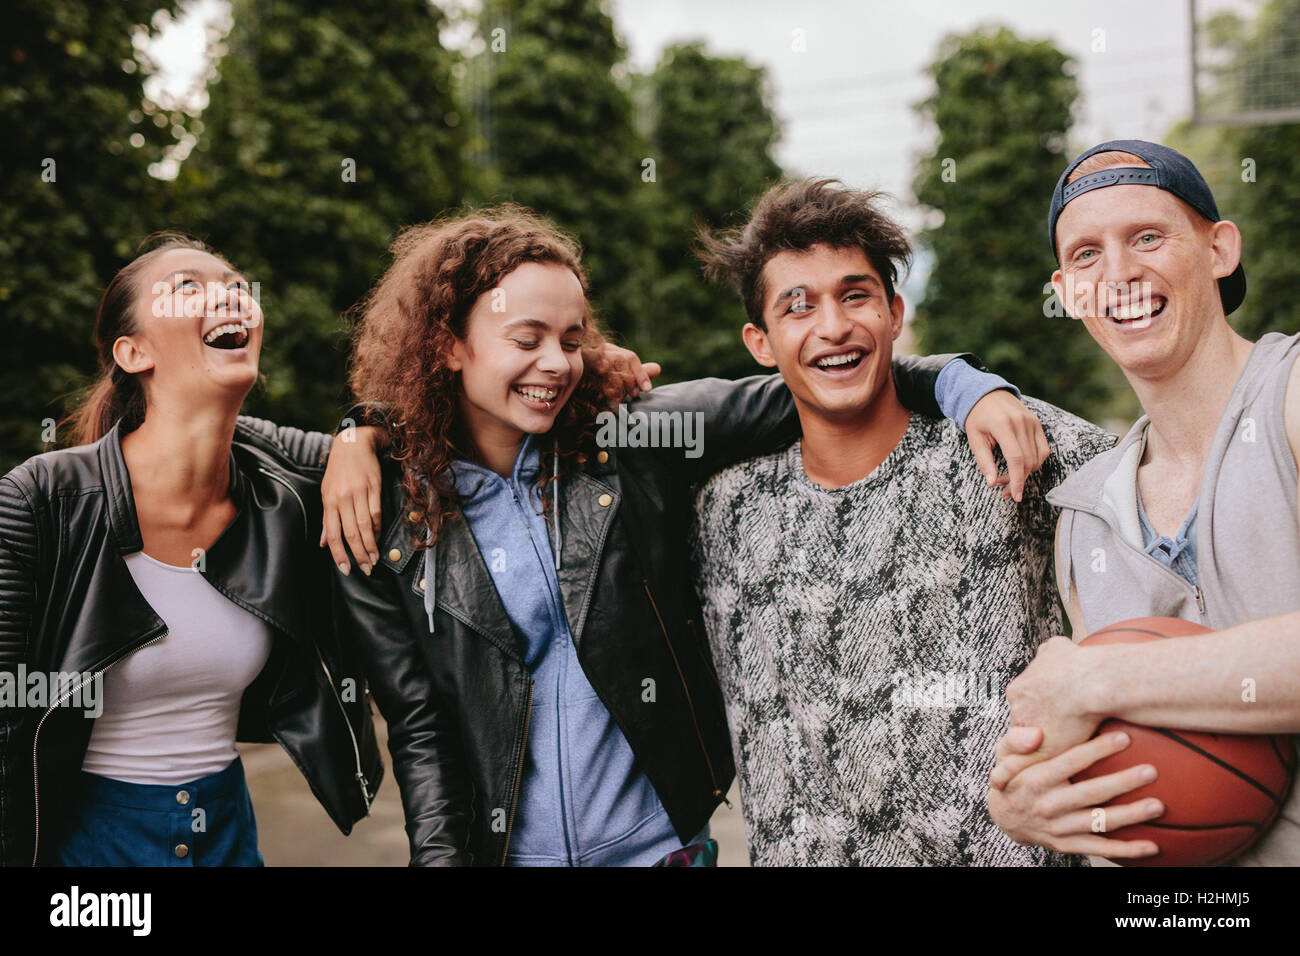 Porträt von vier jungen Freunde lächelnd zusammen. Gemischte Rassen Gruppe von Menschen, die Natur genießen. Stockfoto